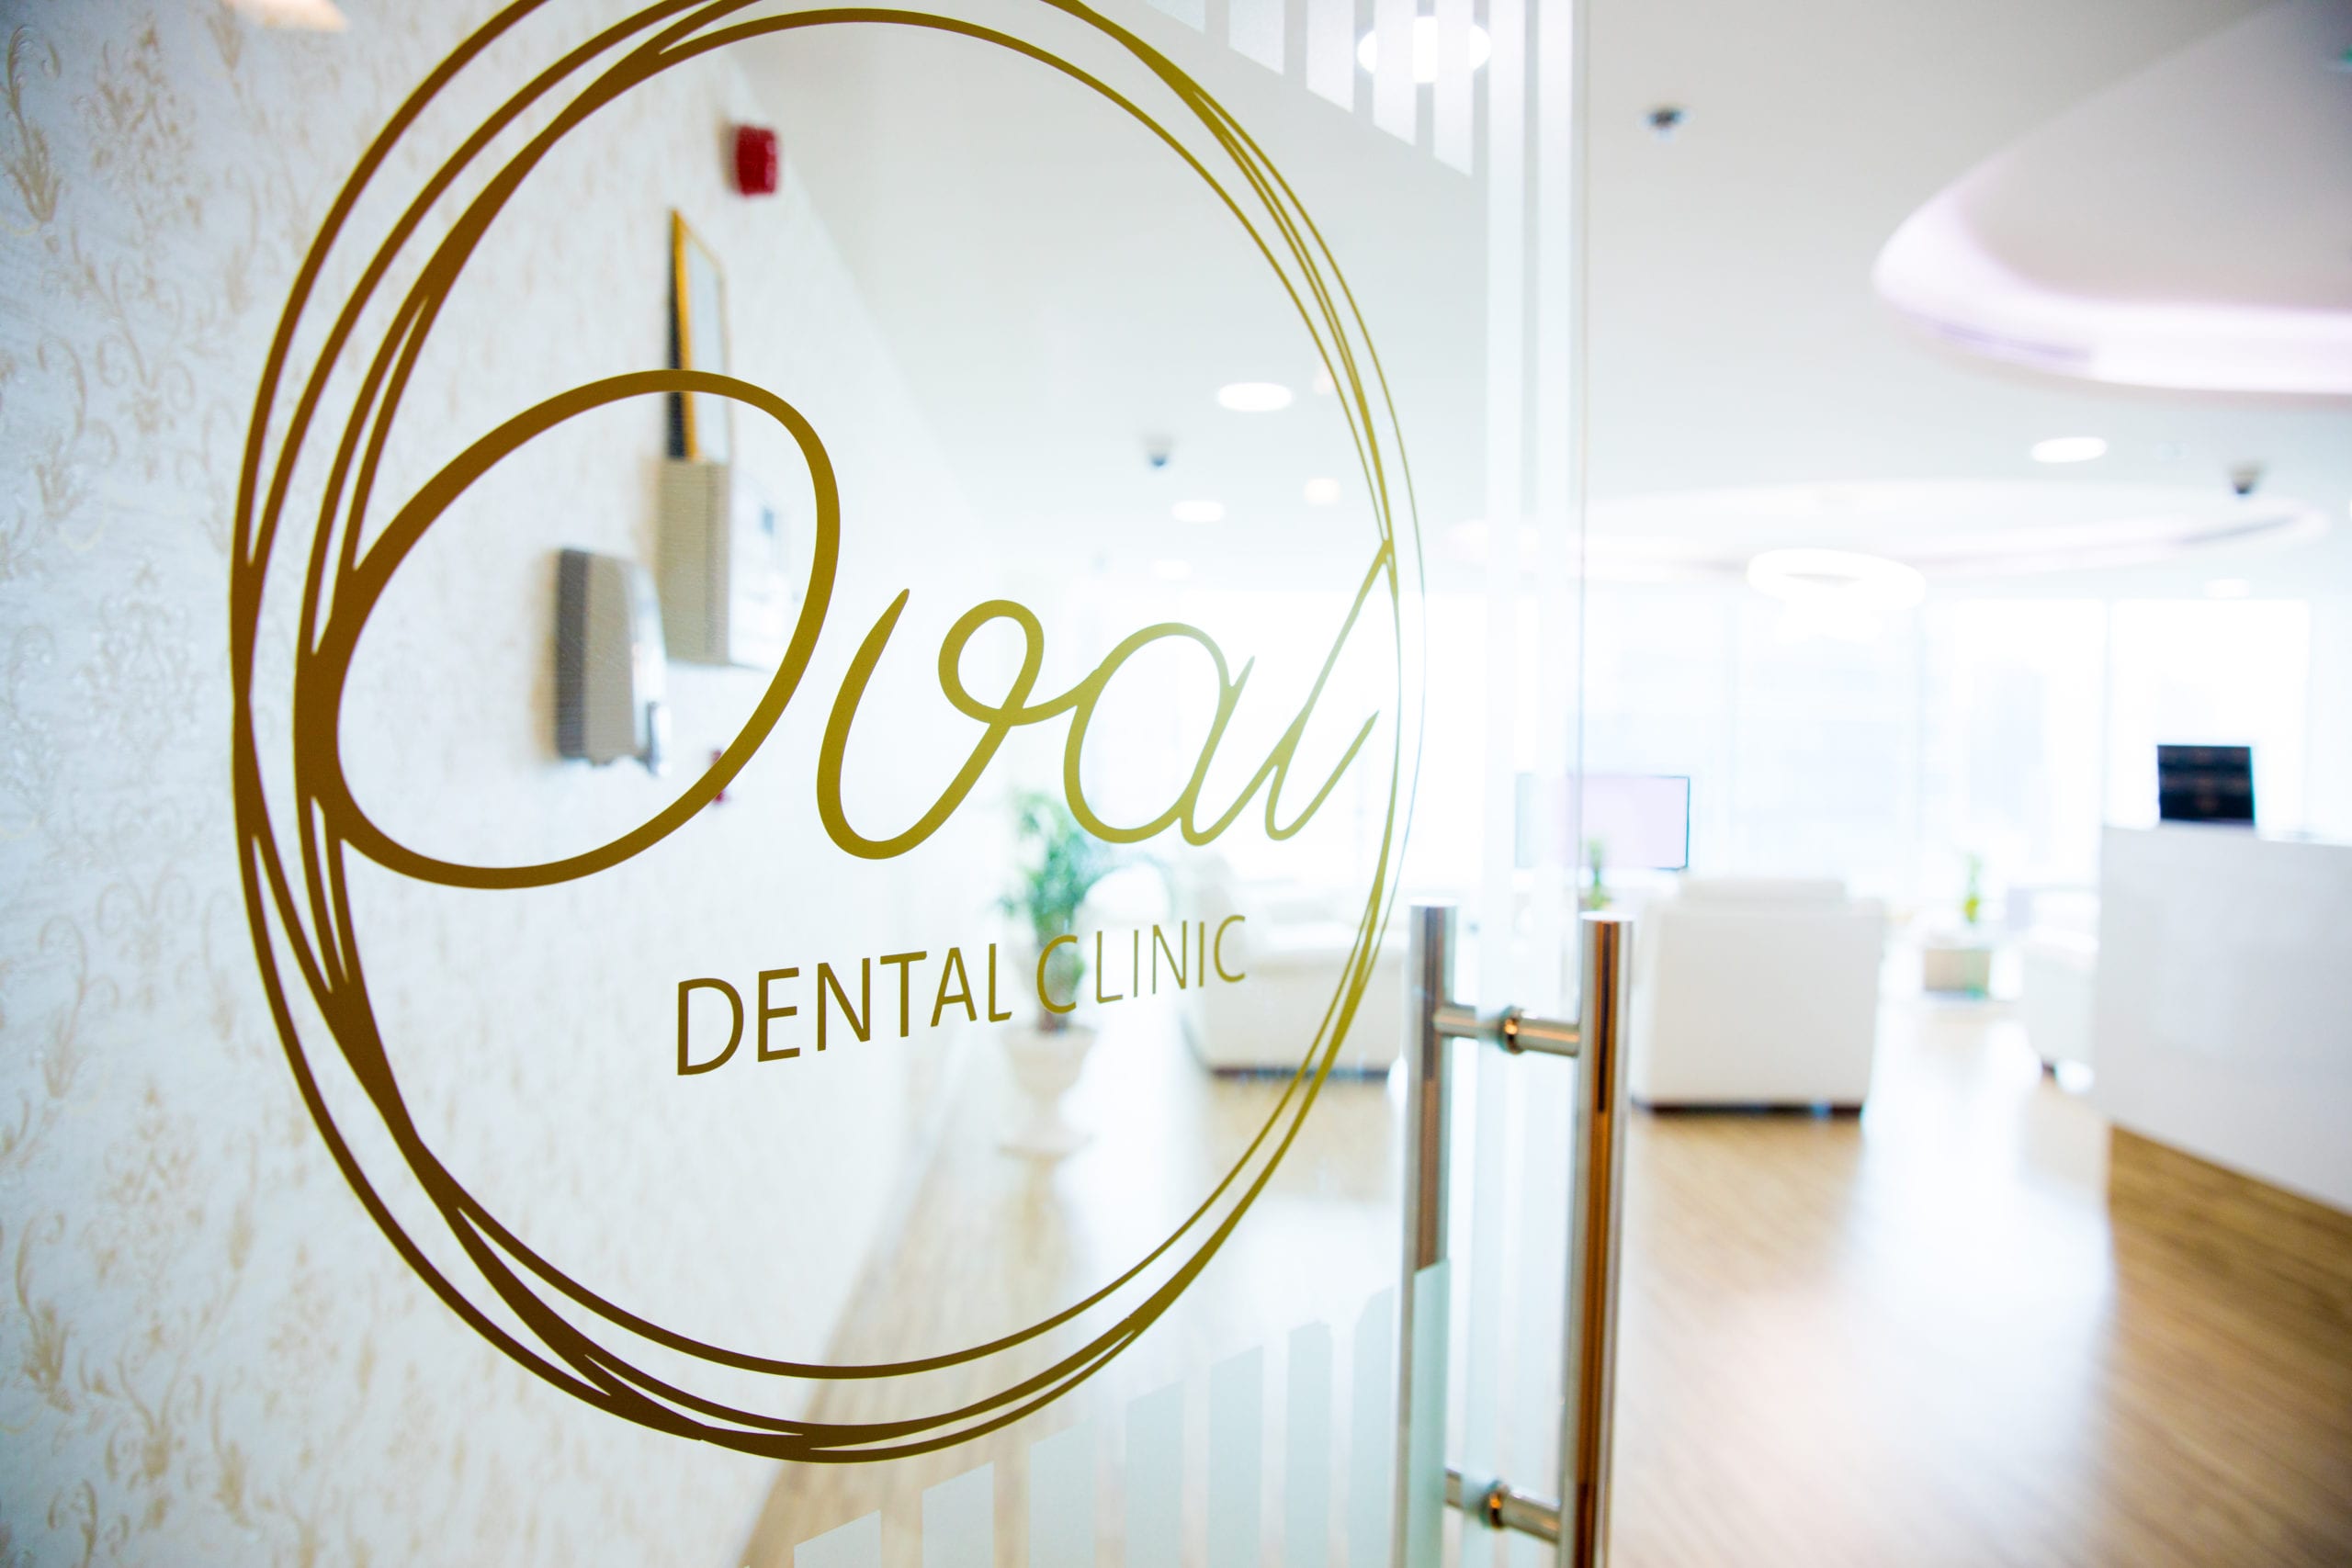 Oval Dental Clinic Dubai